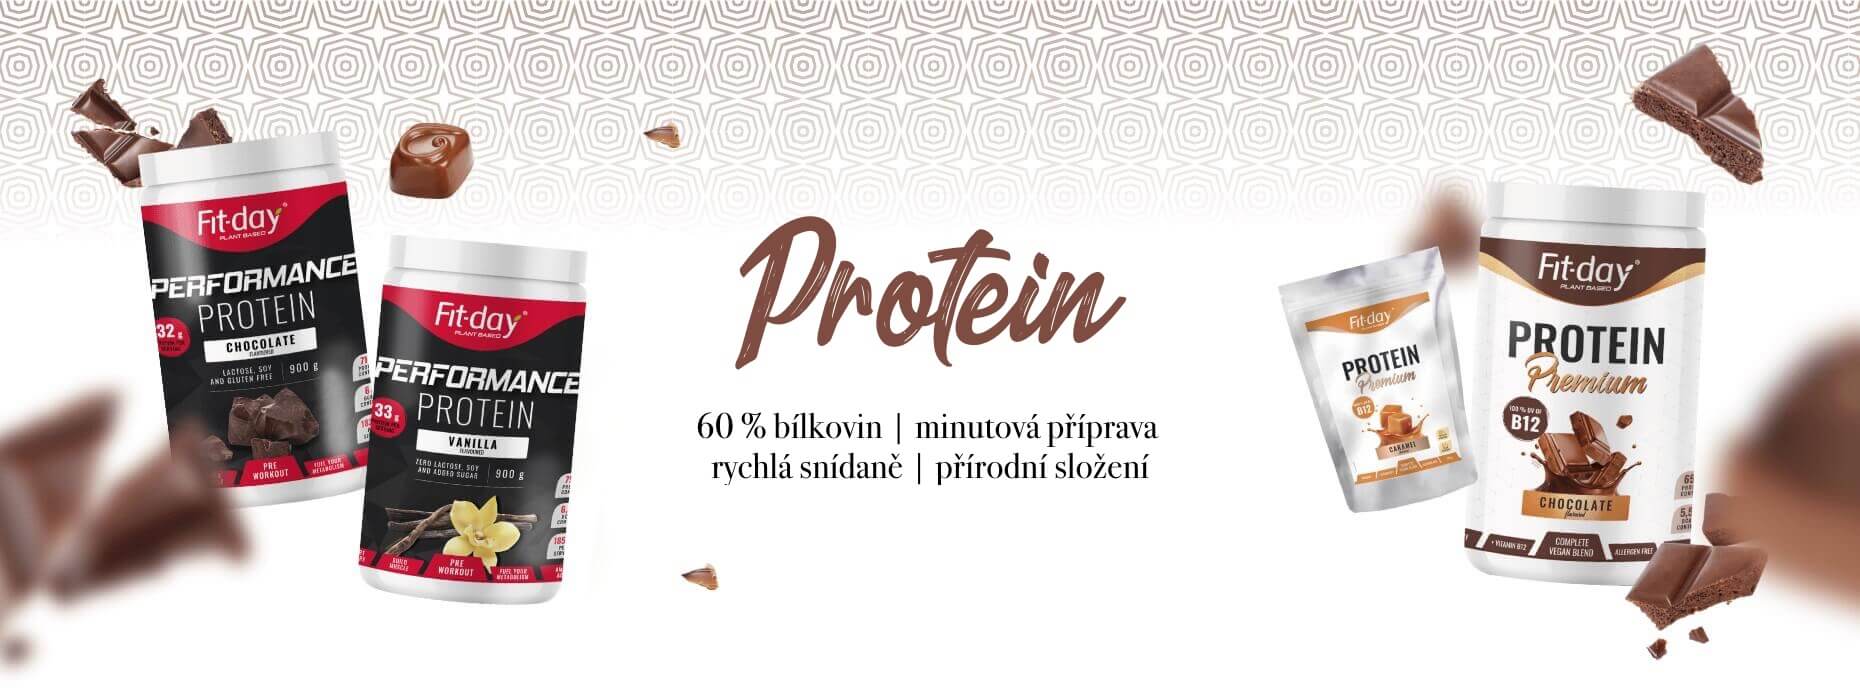 protein_1860x700_cz